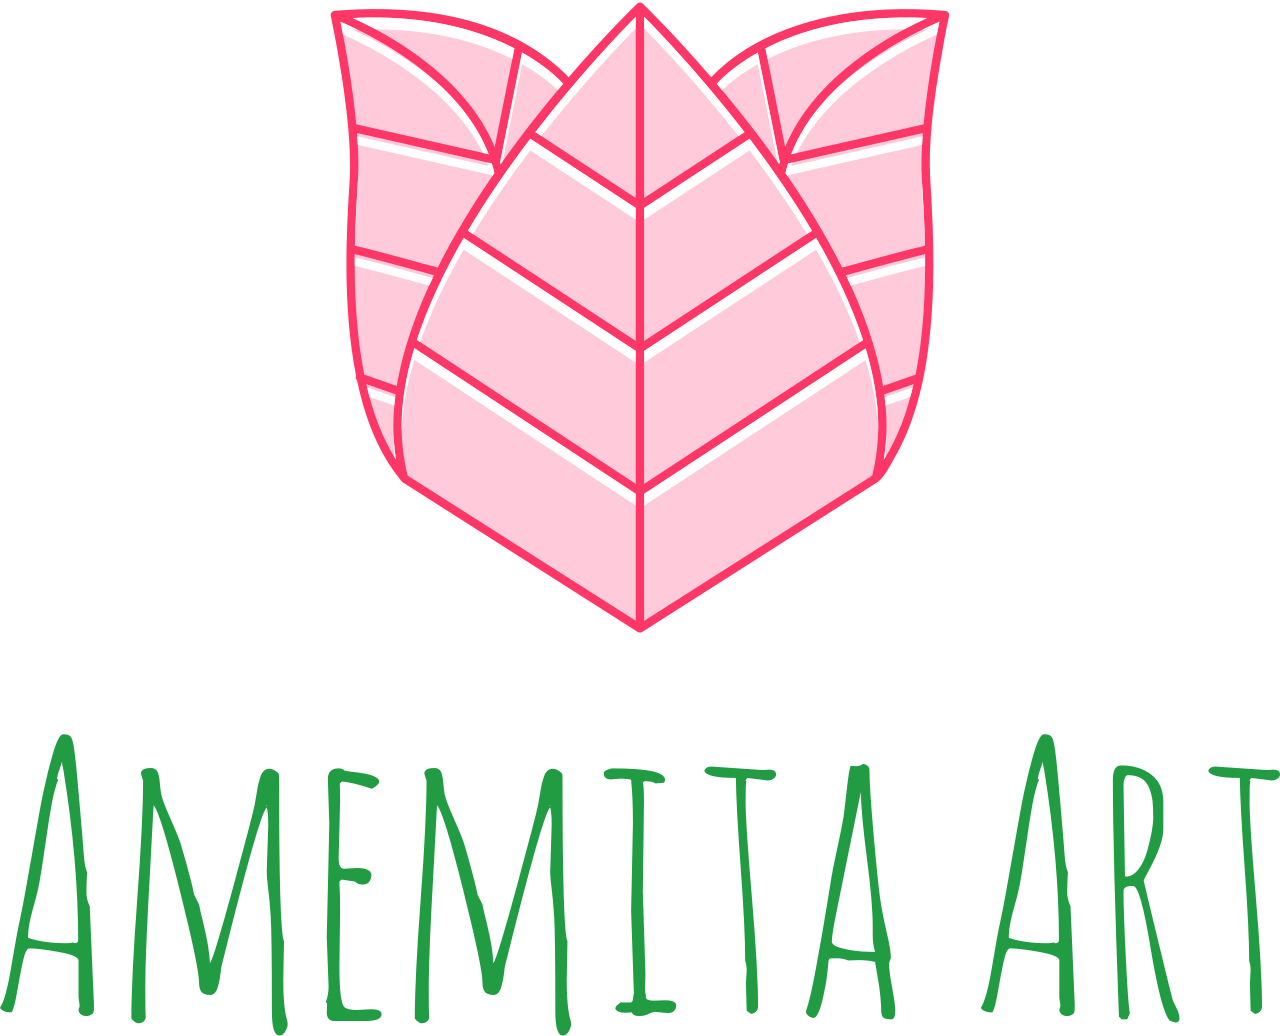 Amemita Art's web page